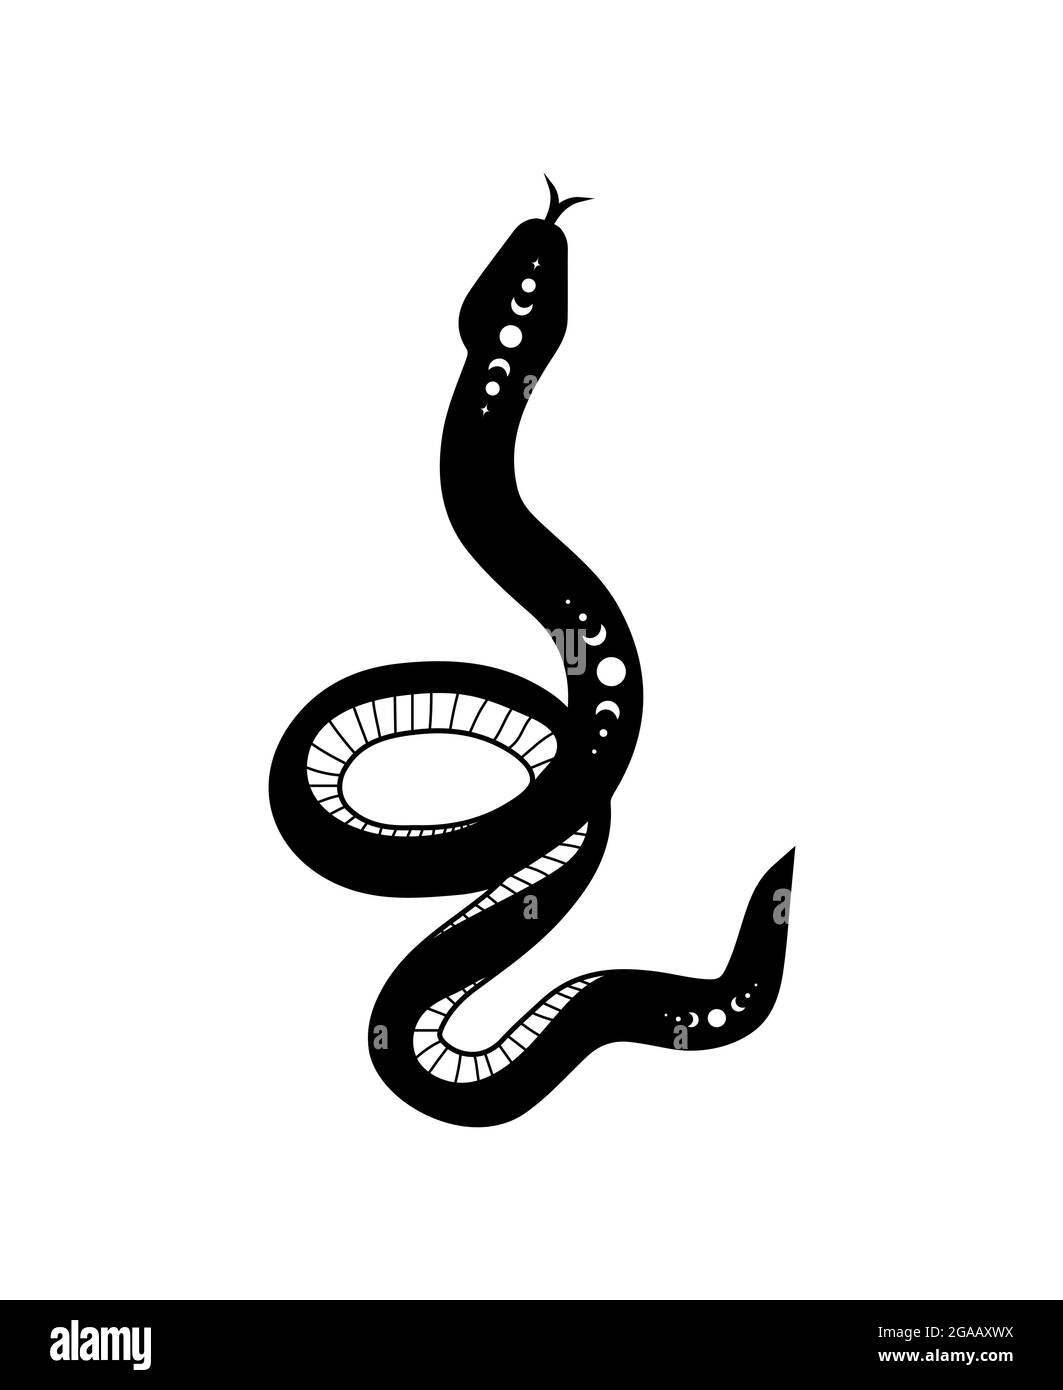 Serpente magico in stile boho con la luna. Simbolo mistico in uno stile minimalista alla moda. Illustrazione vettoriale esoterica Illustrazione Vettoriale